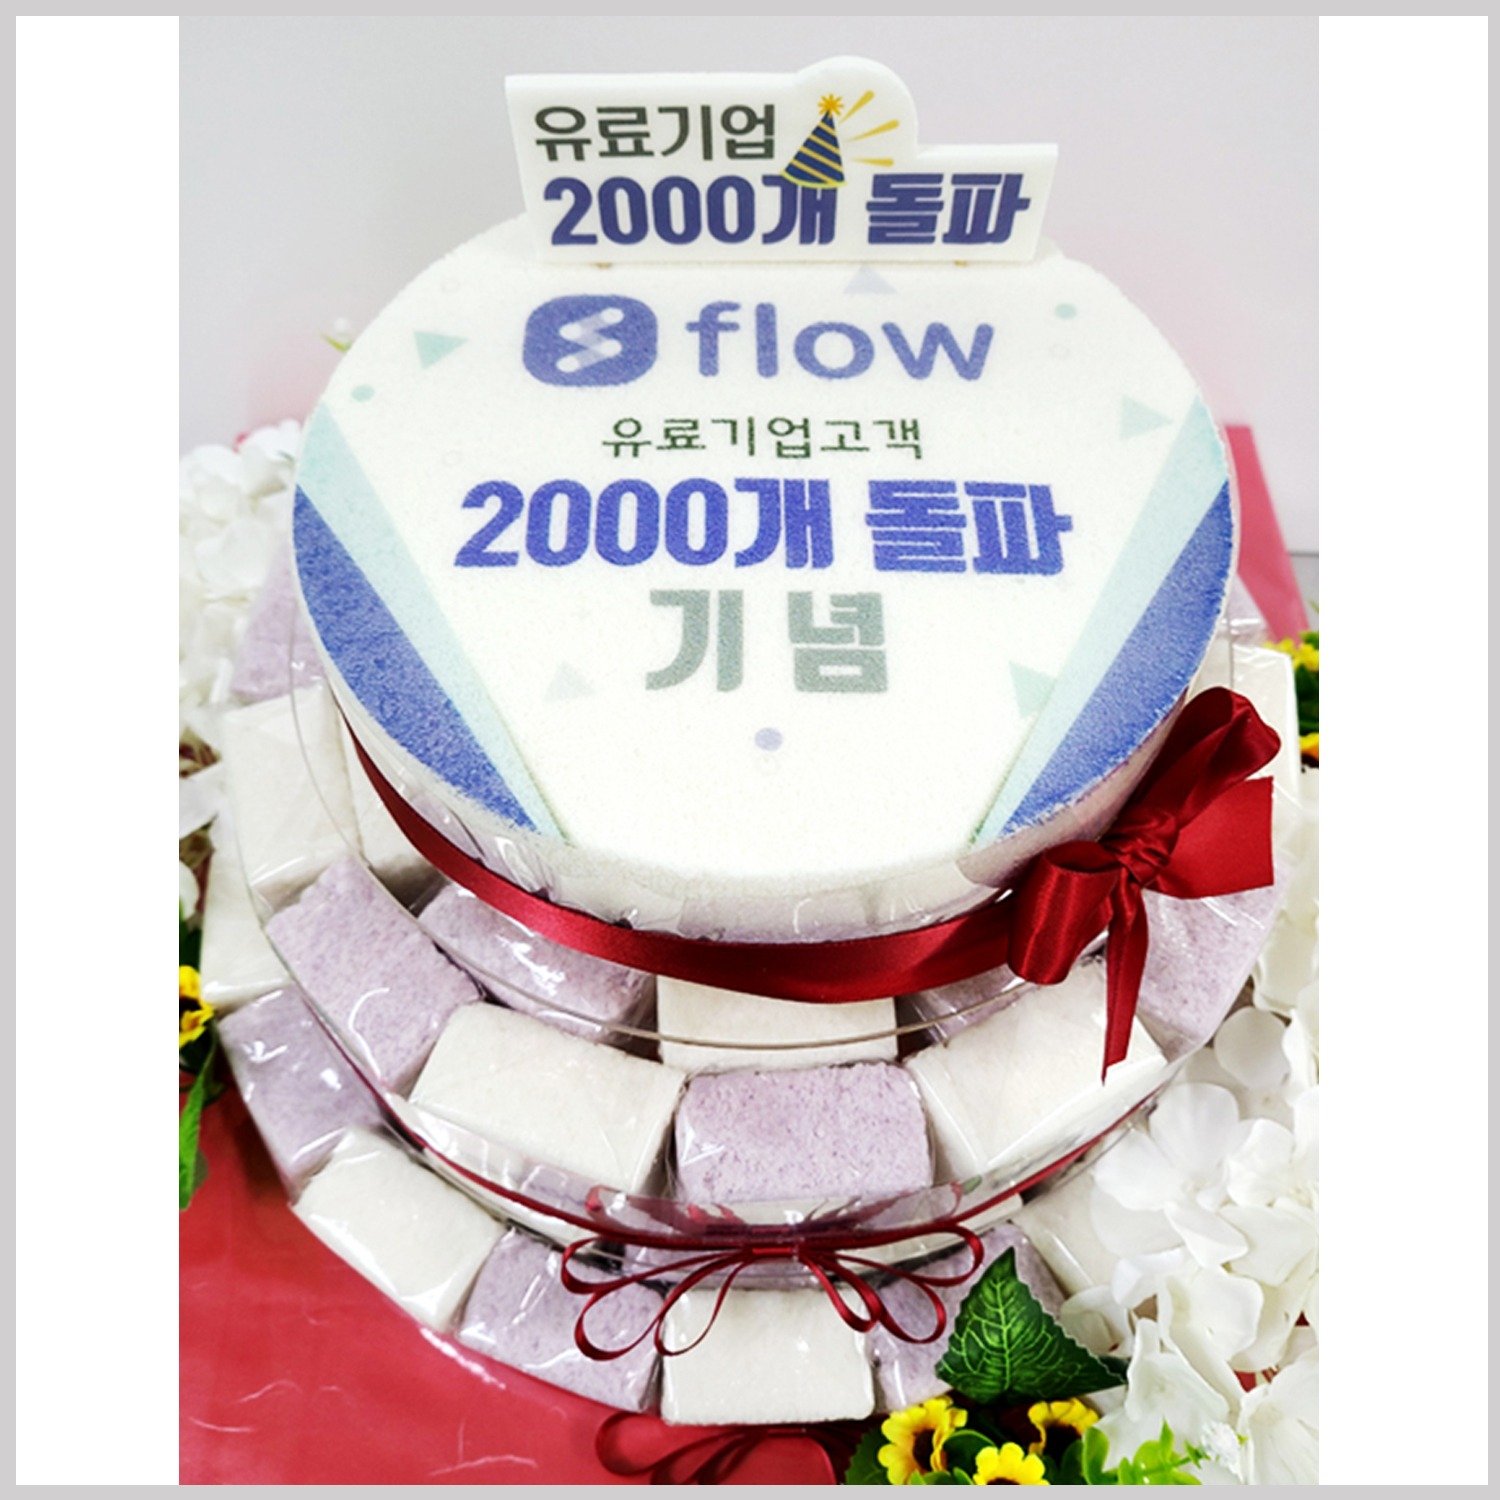 flow 기념 3단 케이크